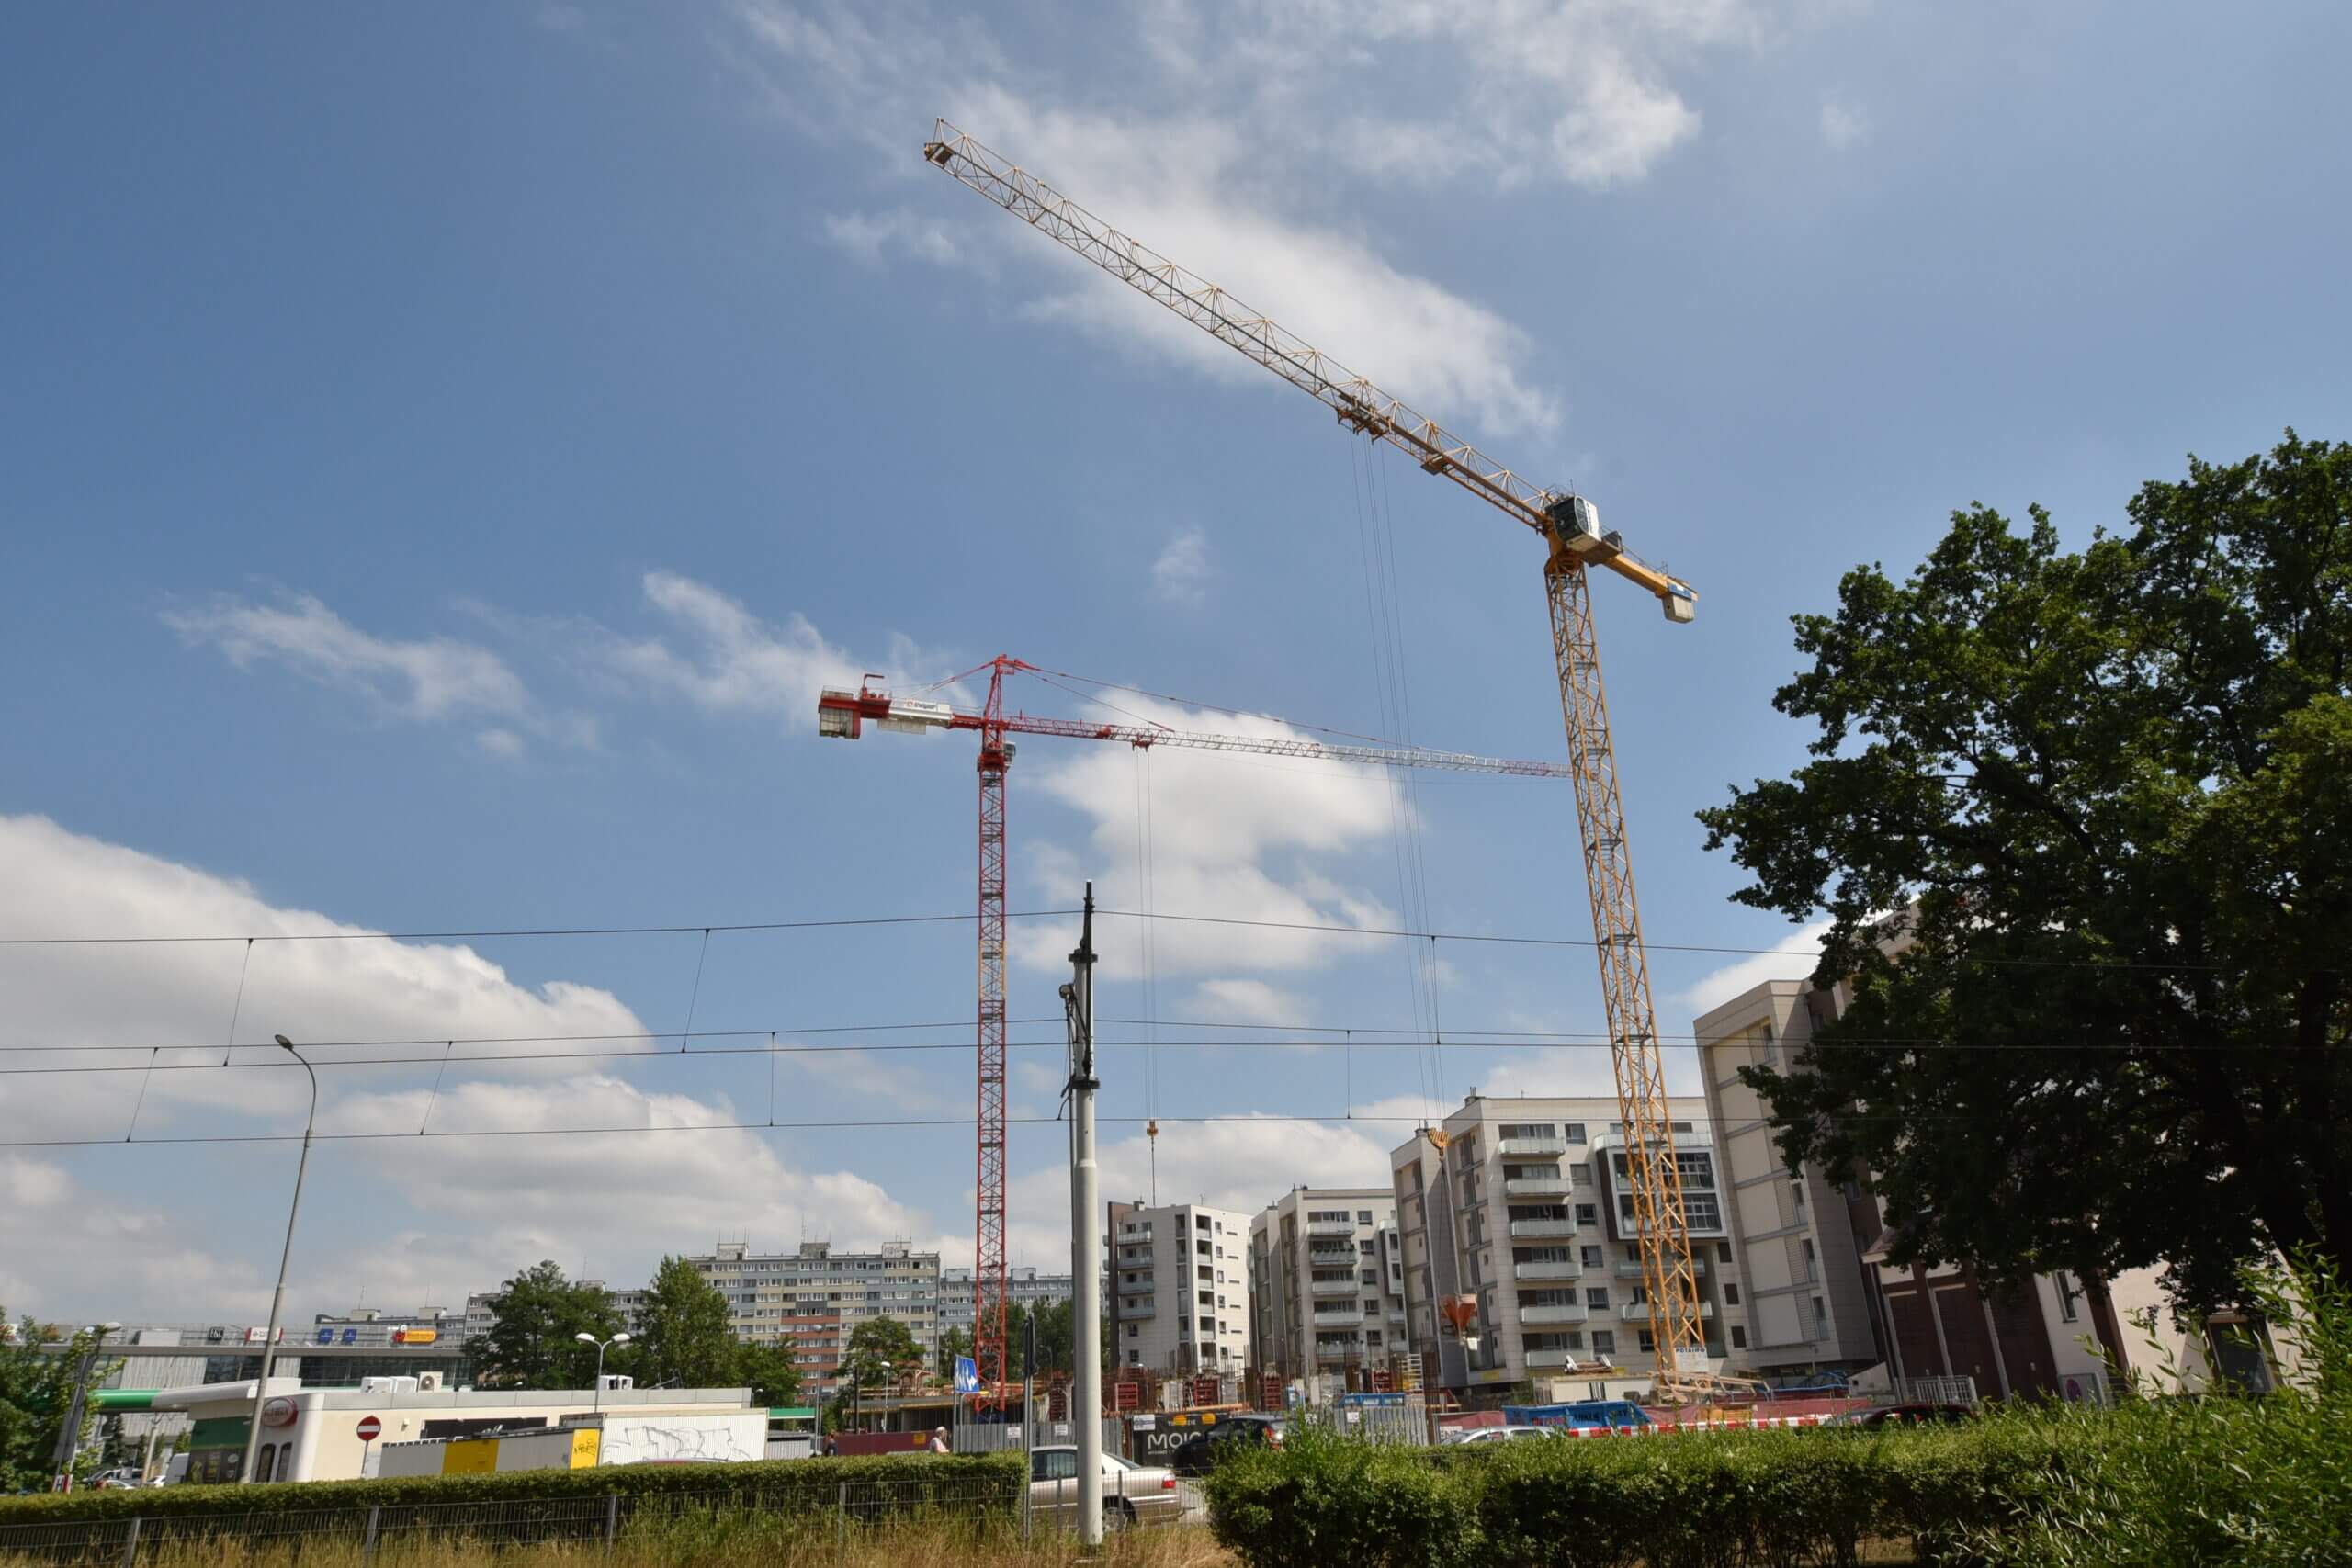 Budowa I2 Development, KPB, ul. Grabiszyńska, Hallera, 2021